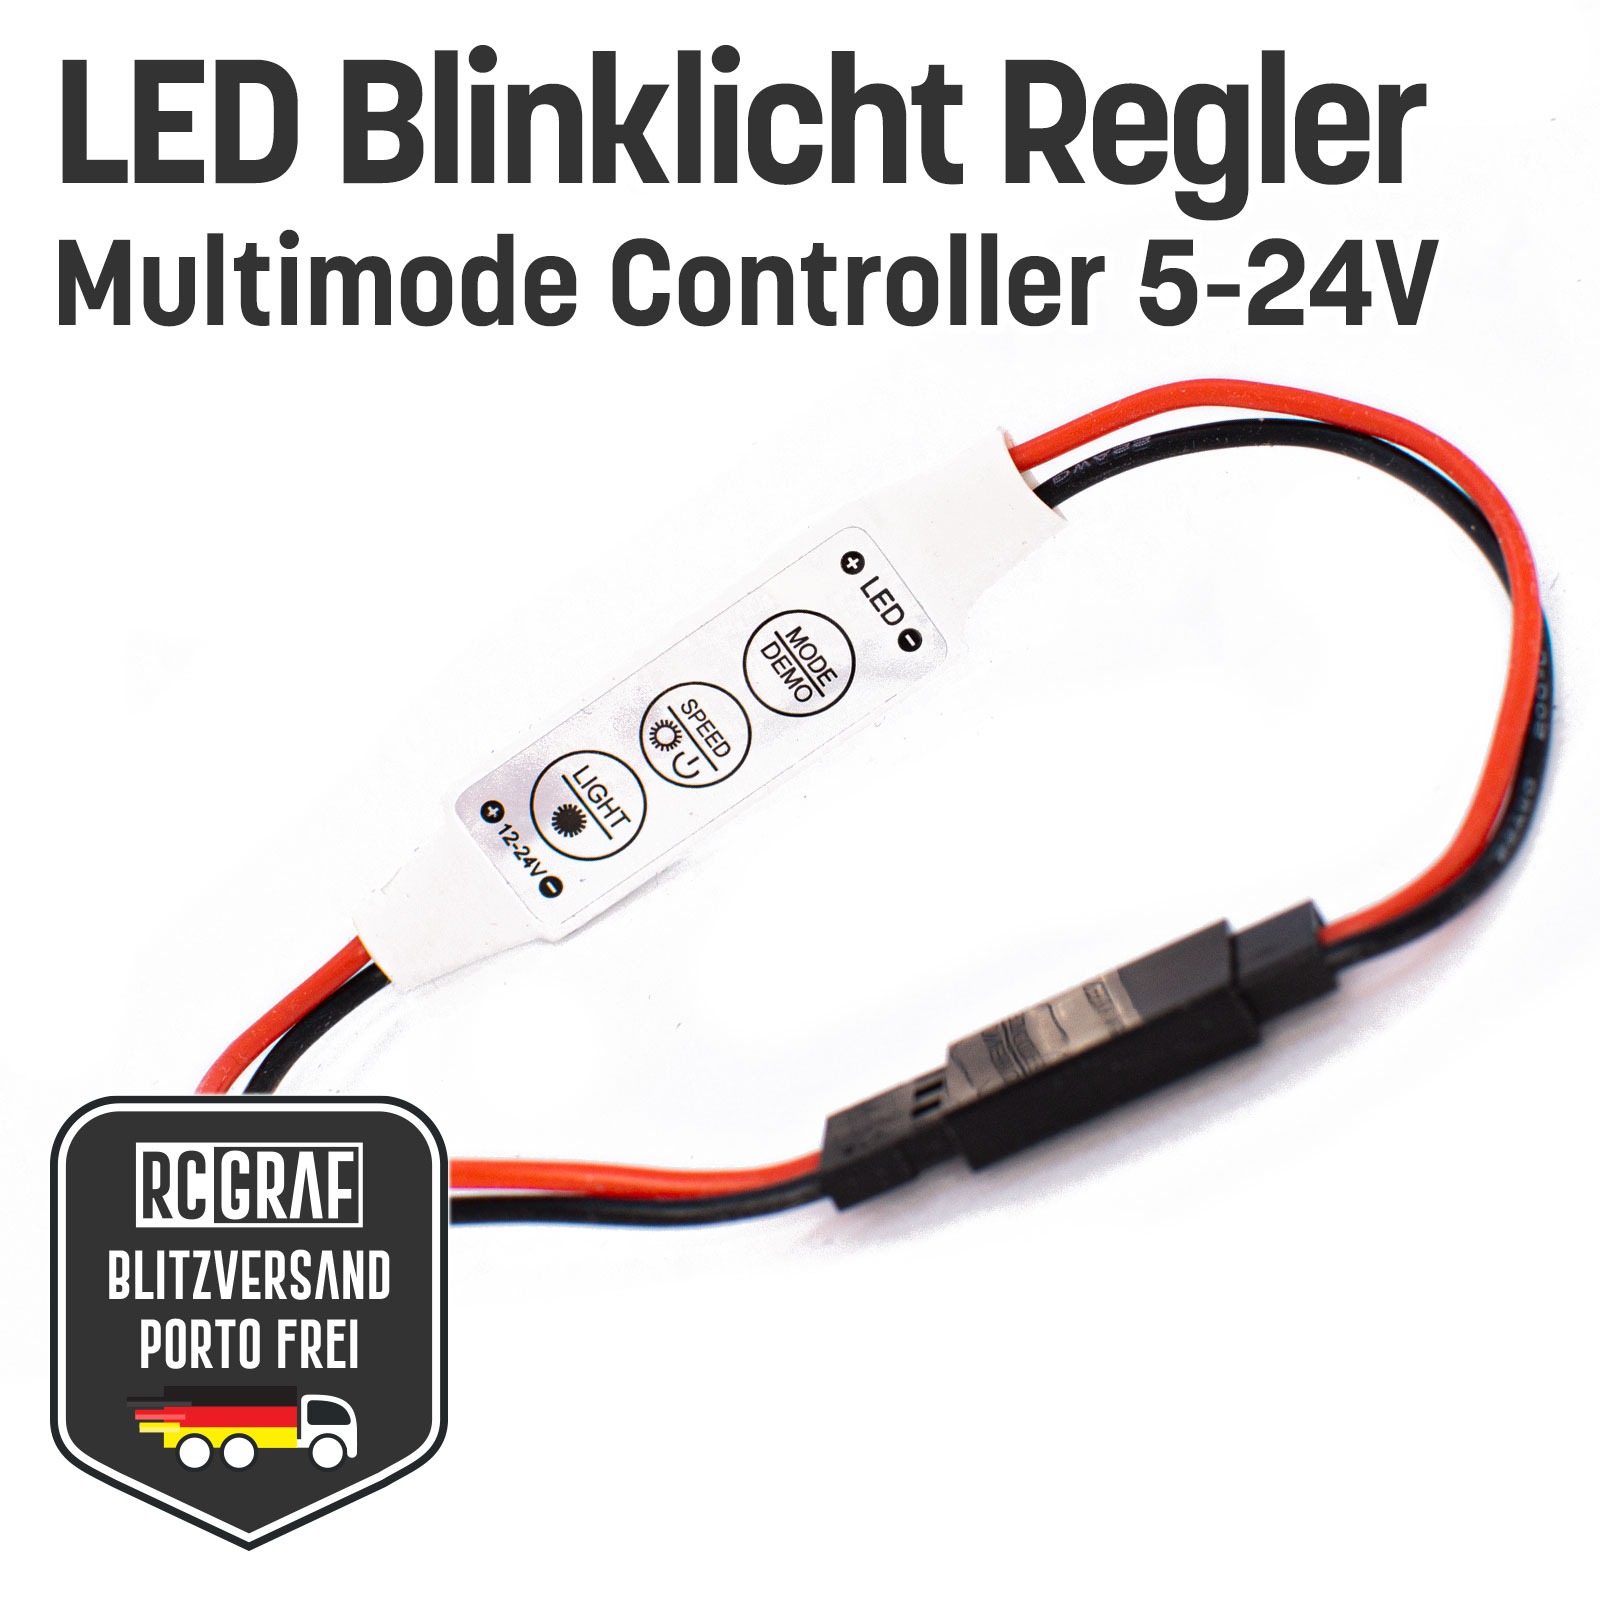 RC LED Blinklicht Regler Multimode Controller Car